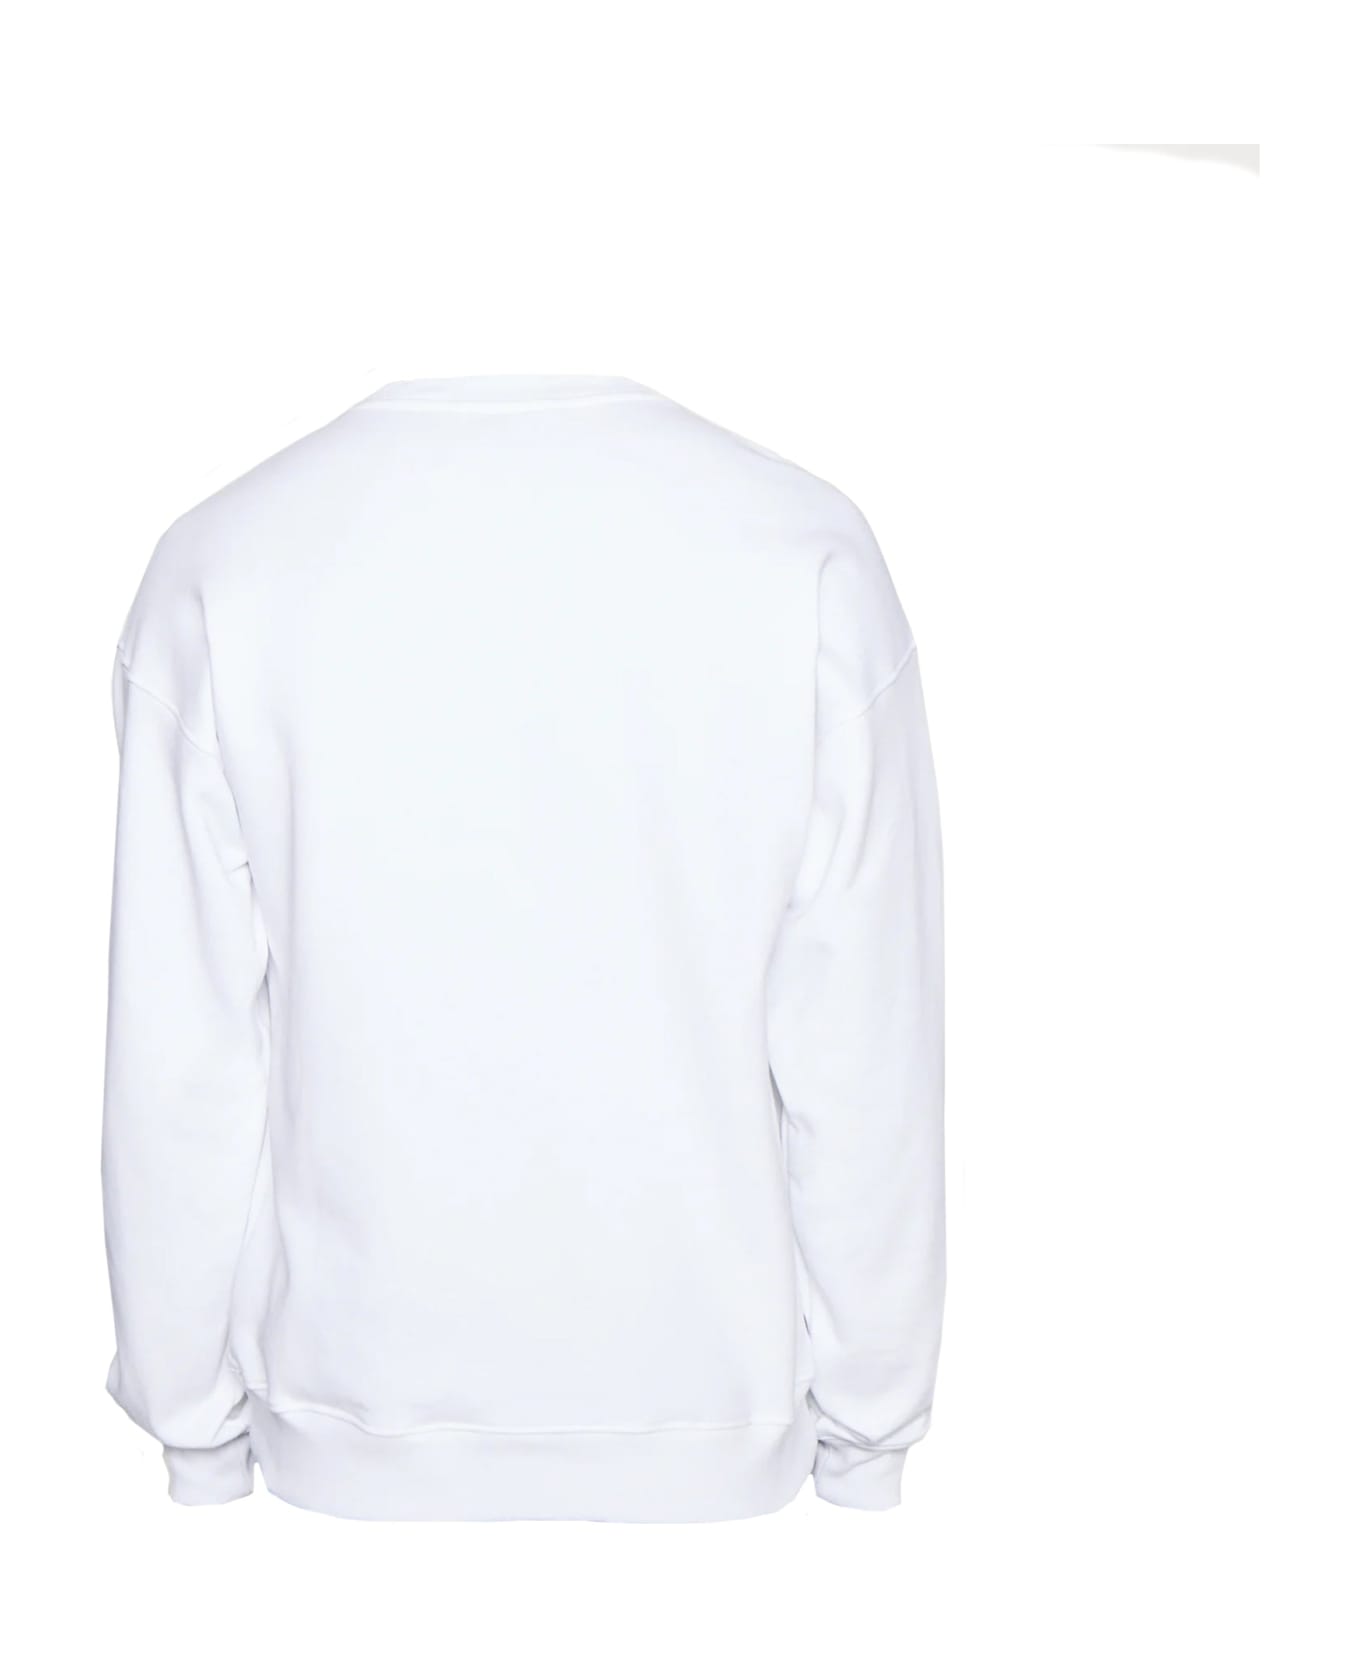 Moschino Couture Cotton Logo Sweatshirt - White